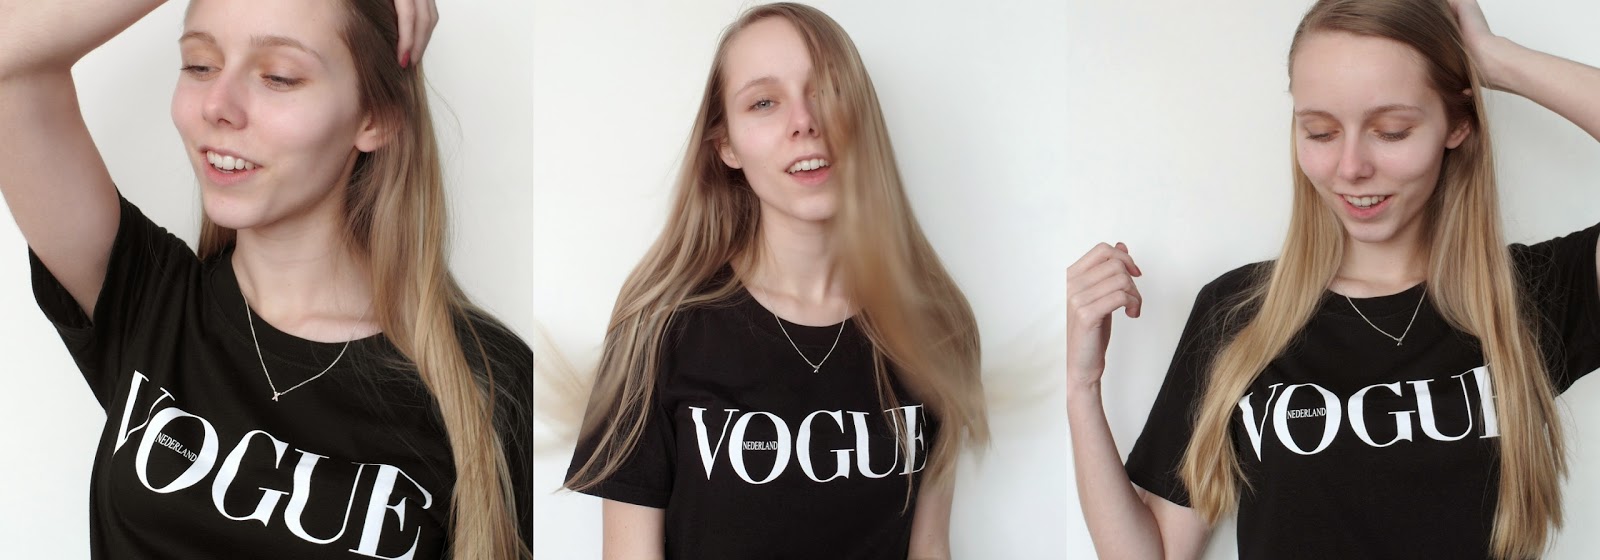 Zwart Vogue shirt nederland 2015